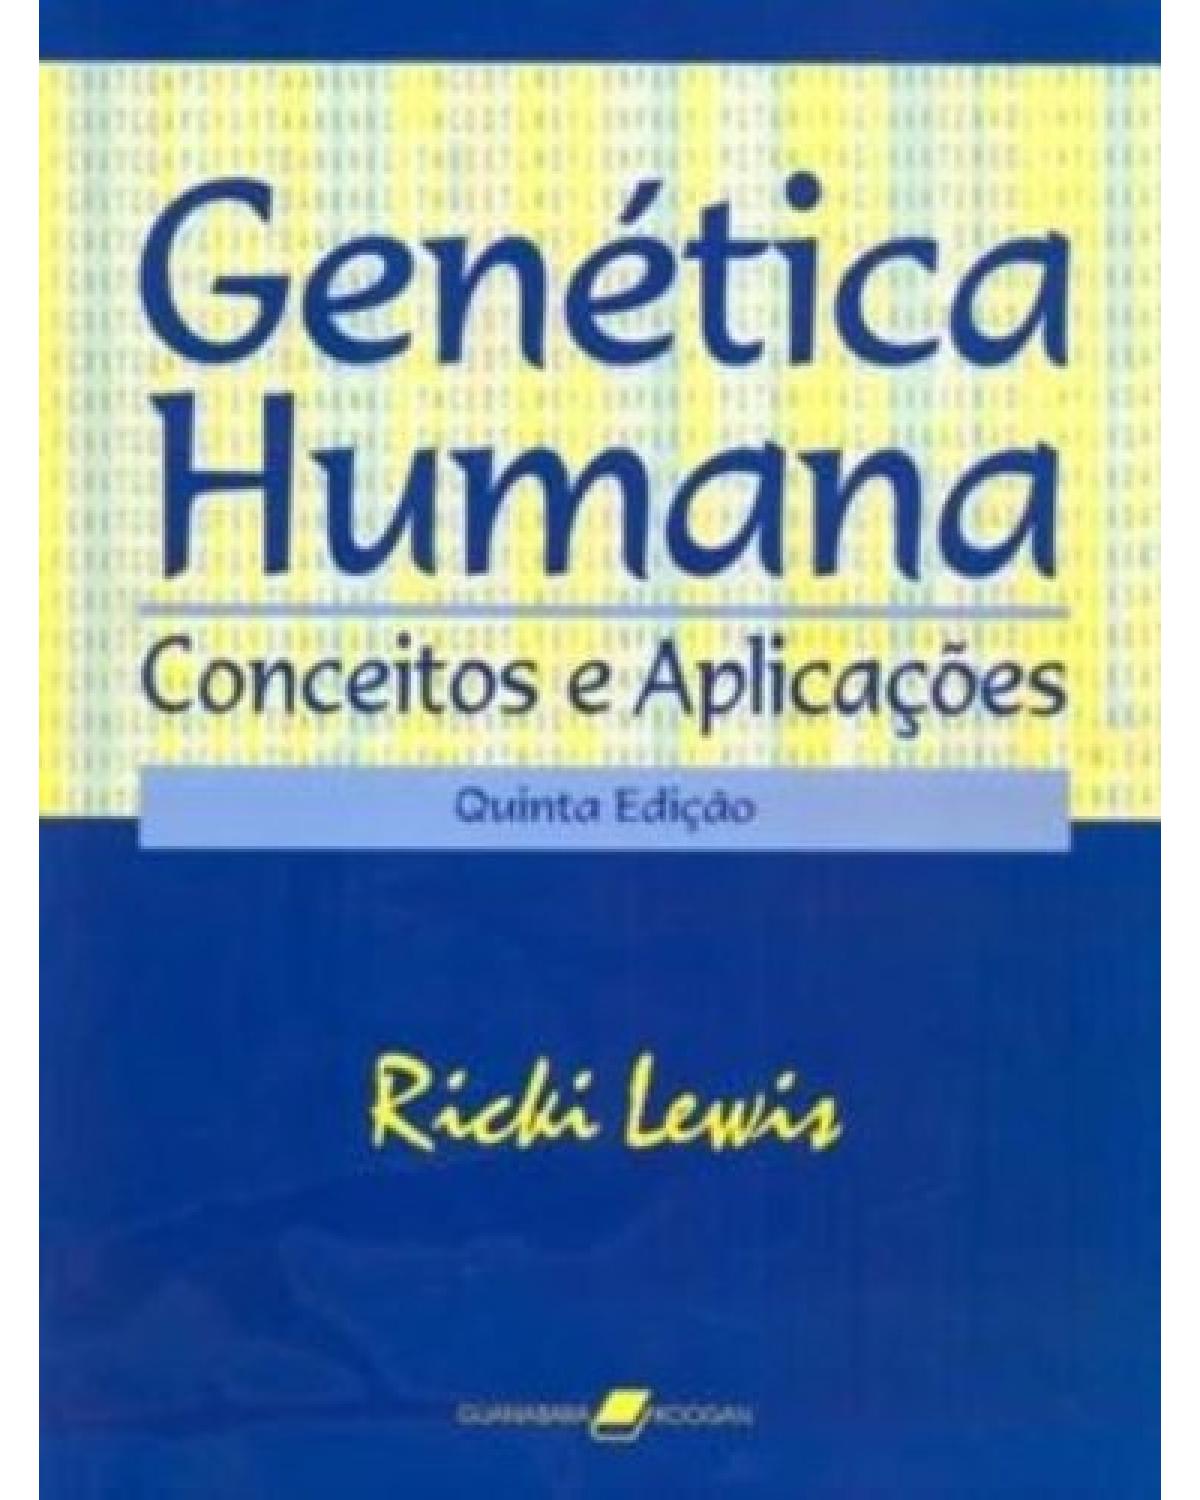 Genética humana - Conceitos e aplicações - 5ª Edição | 2004